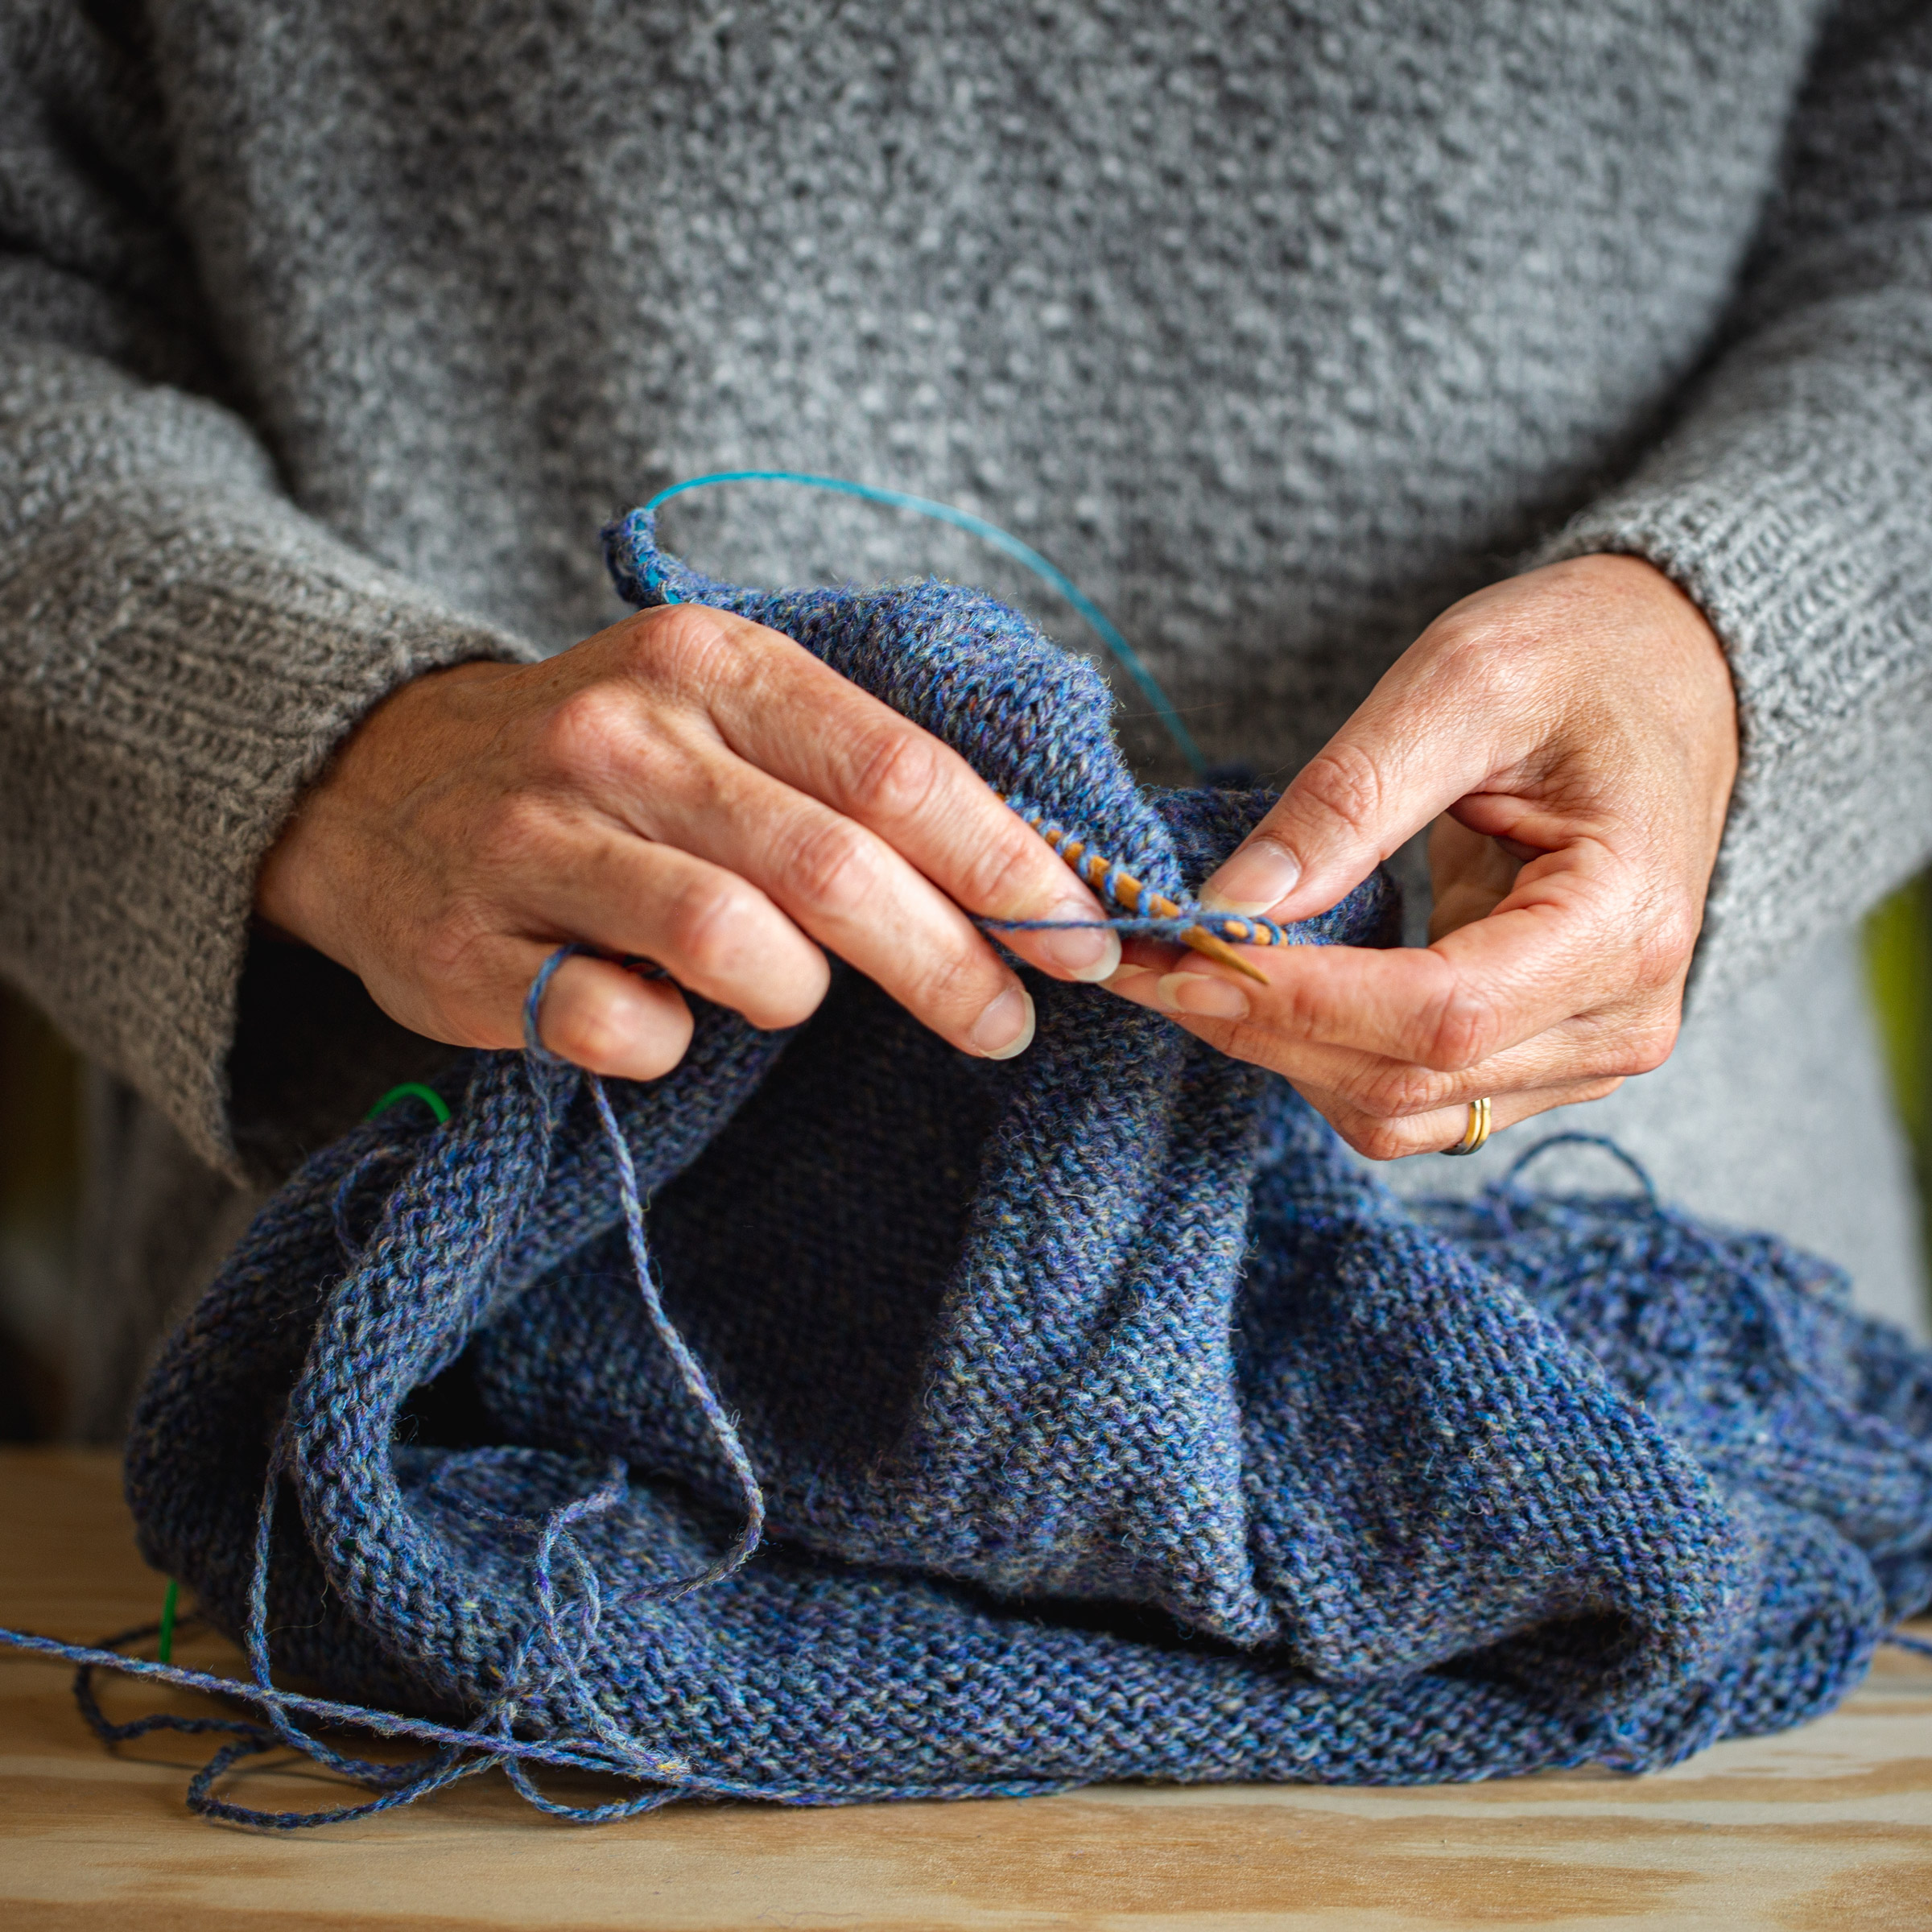 Hands knitting garment